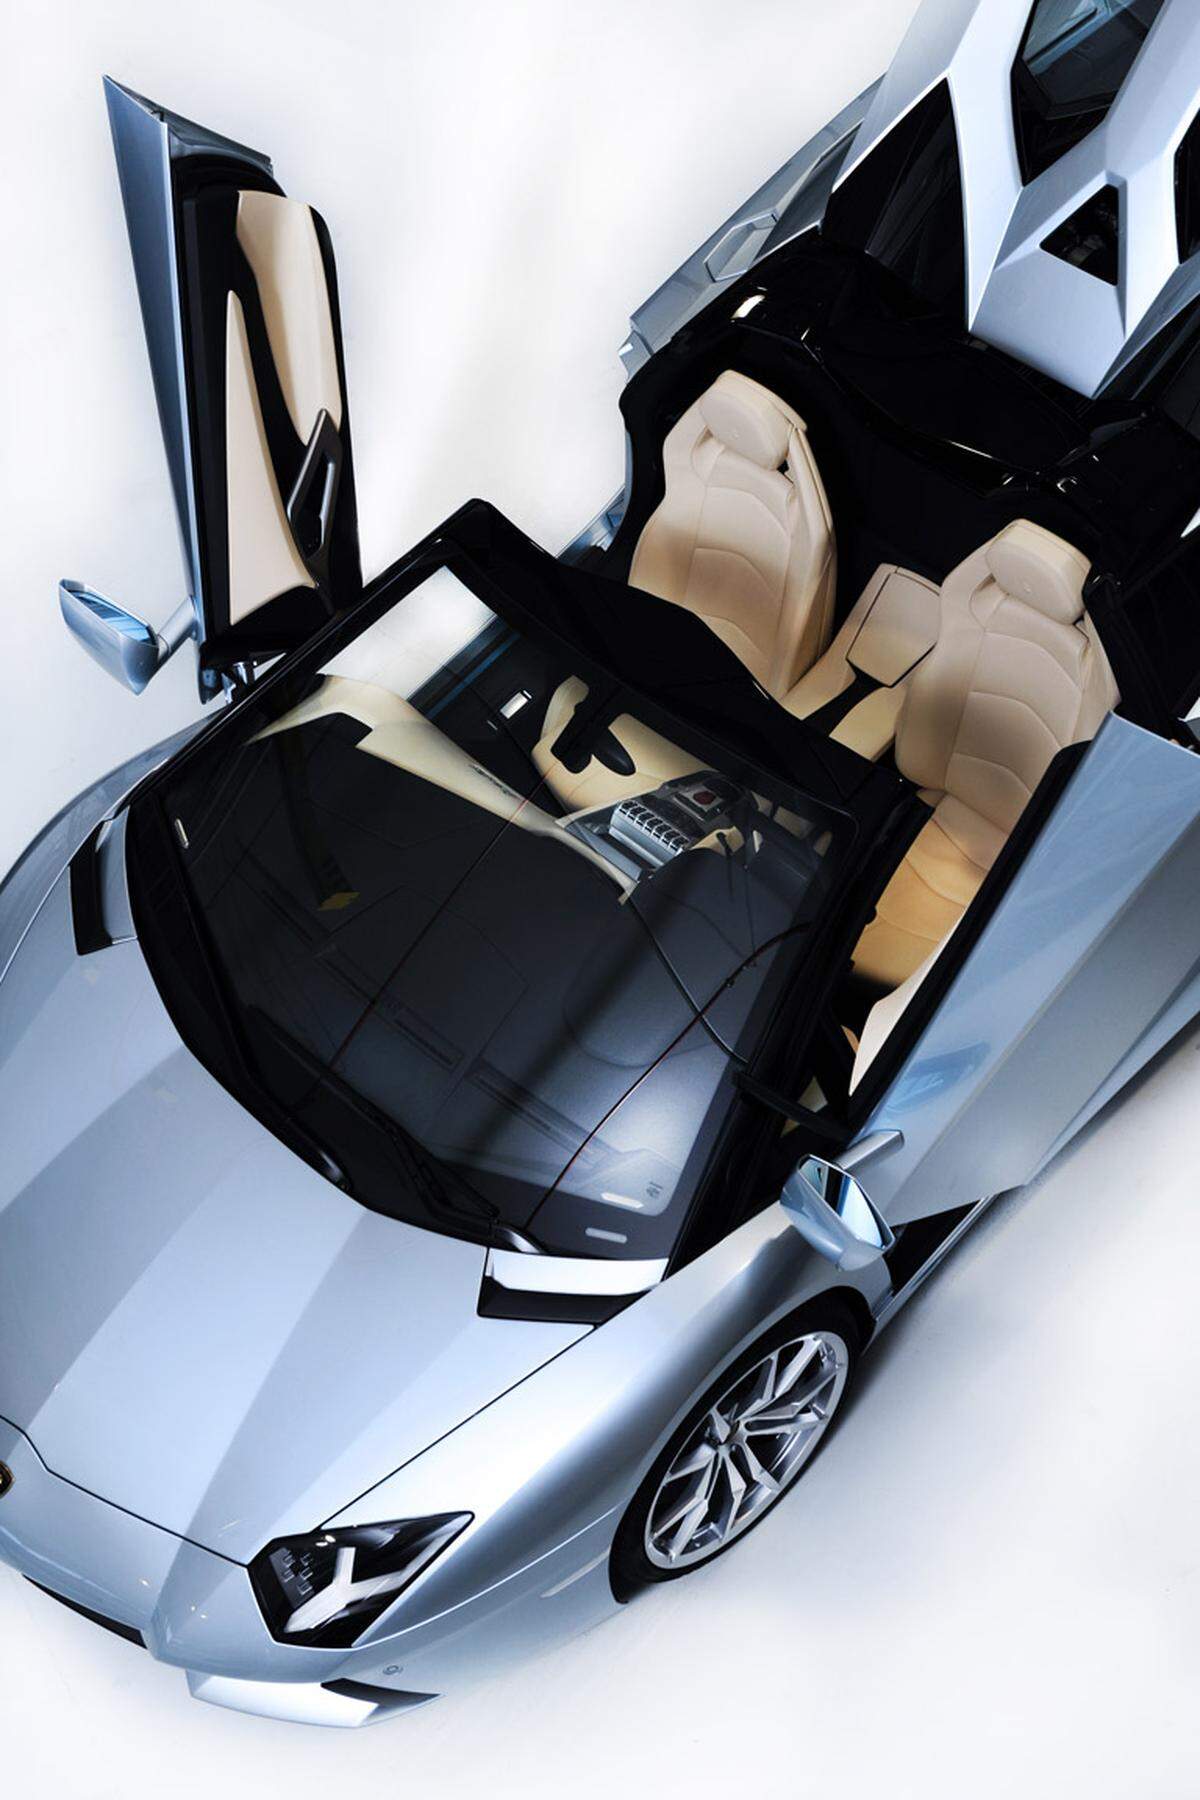 Der Supersportwagen Lamborghini Aventador LP 700-4 wurde 2011 beim Autosalon in Genf vorgestellt.